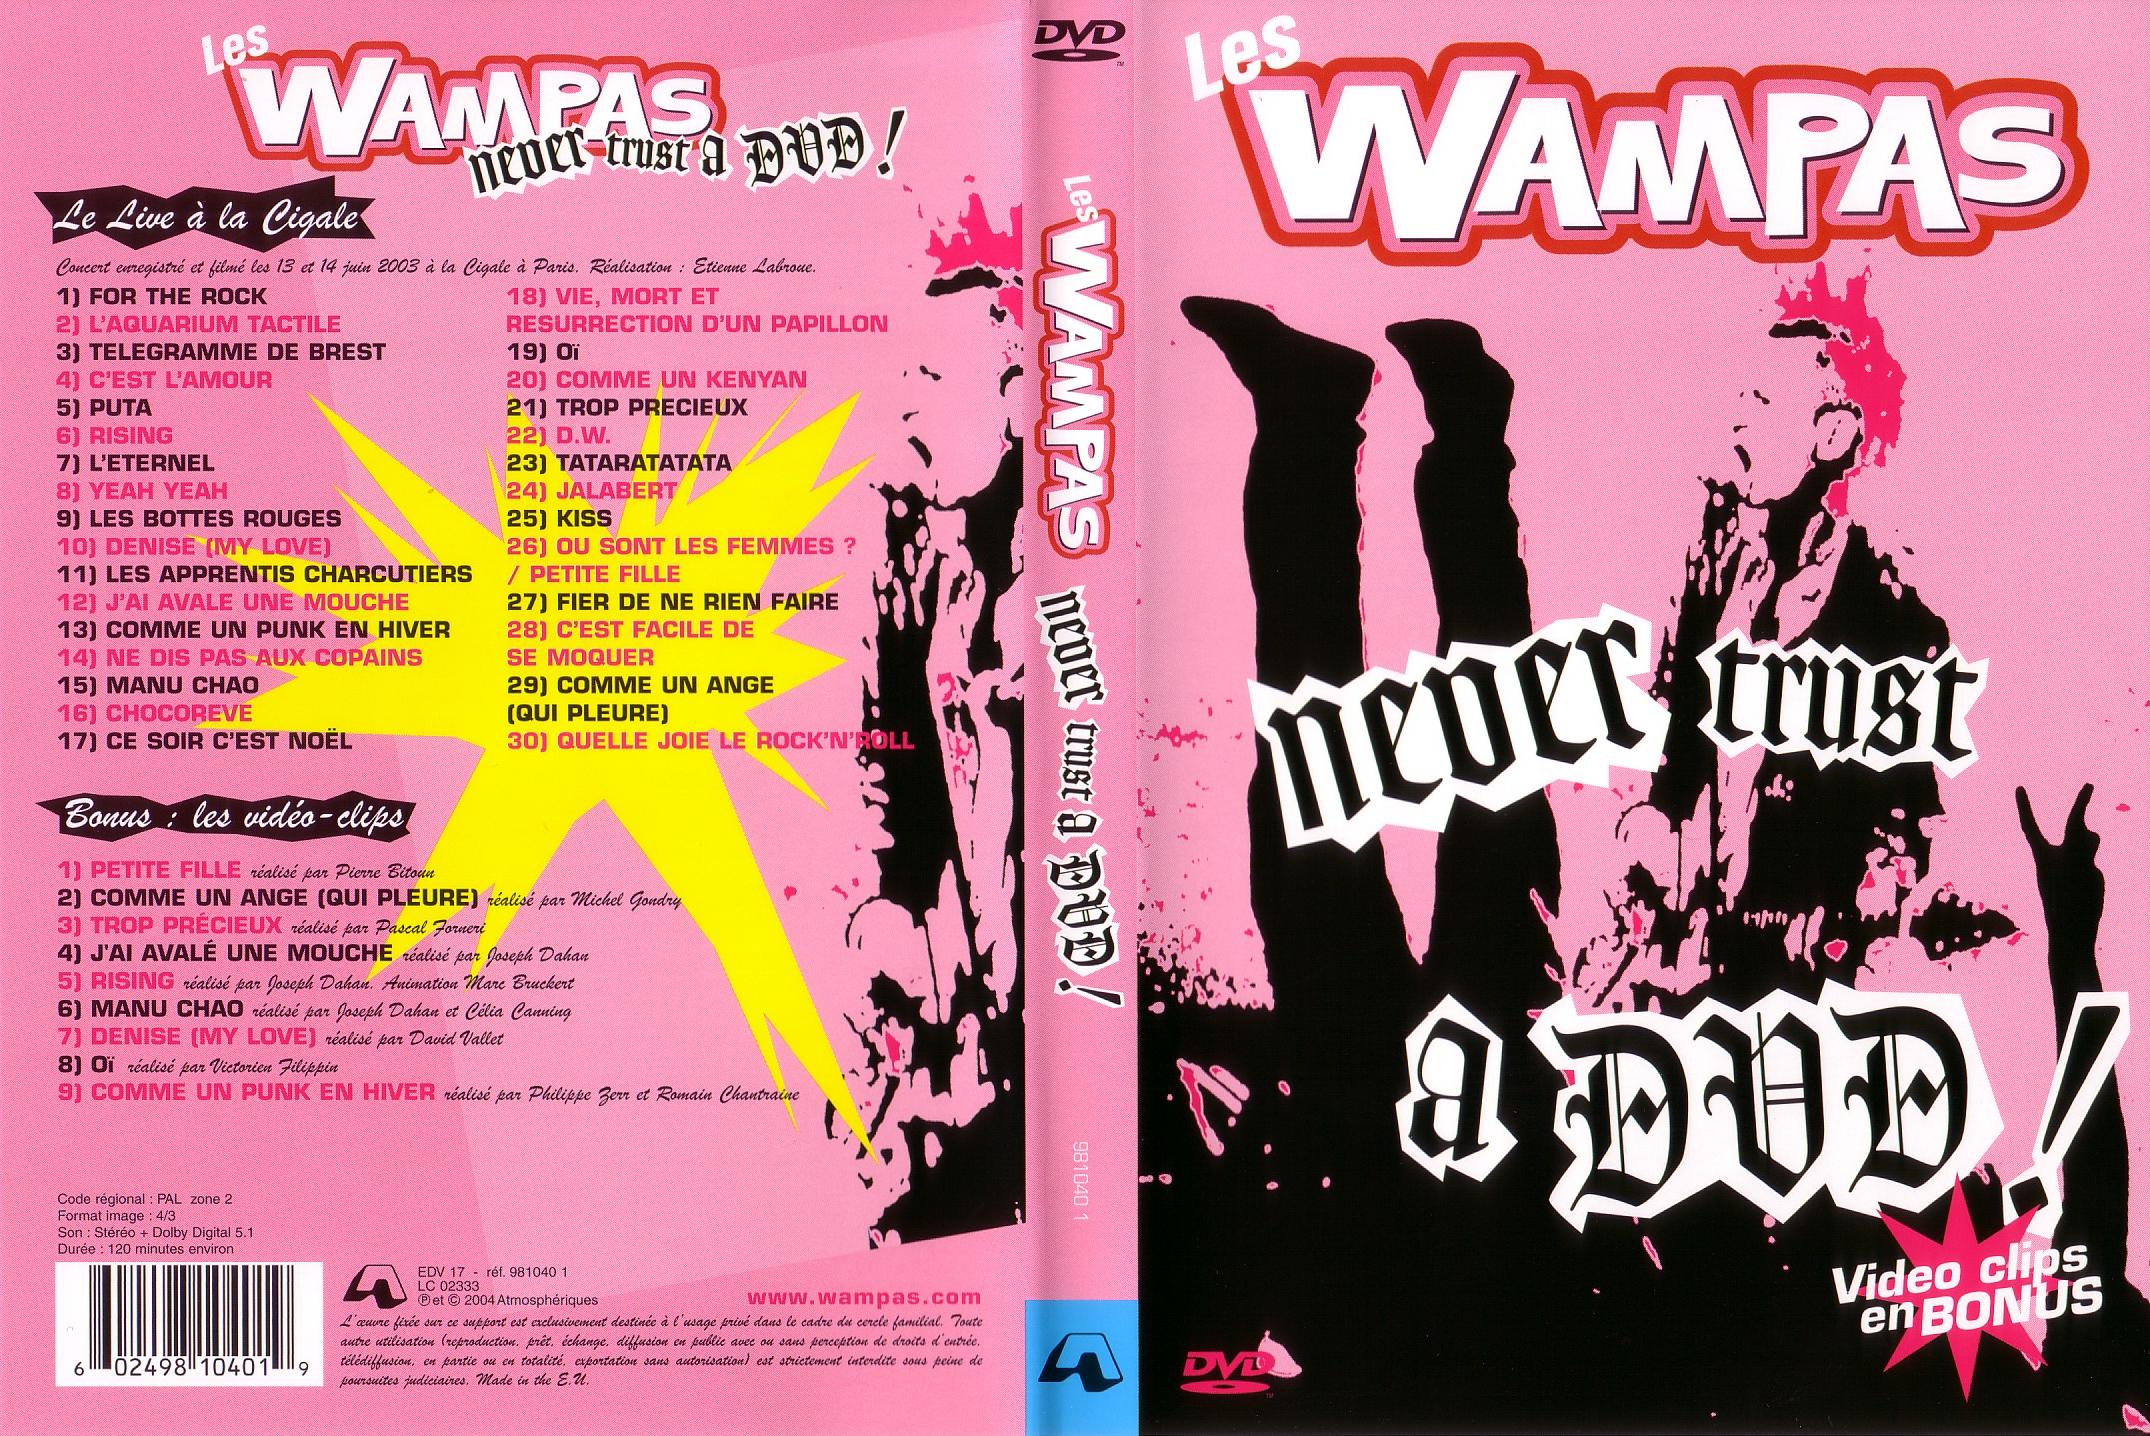 Jaquette DVD Les Wampas Never trust a DVD